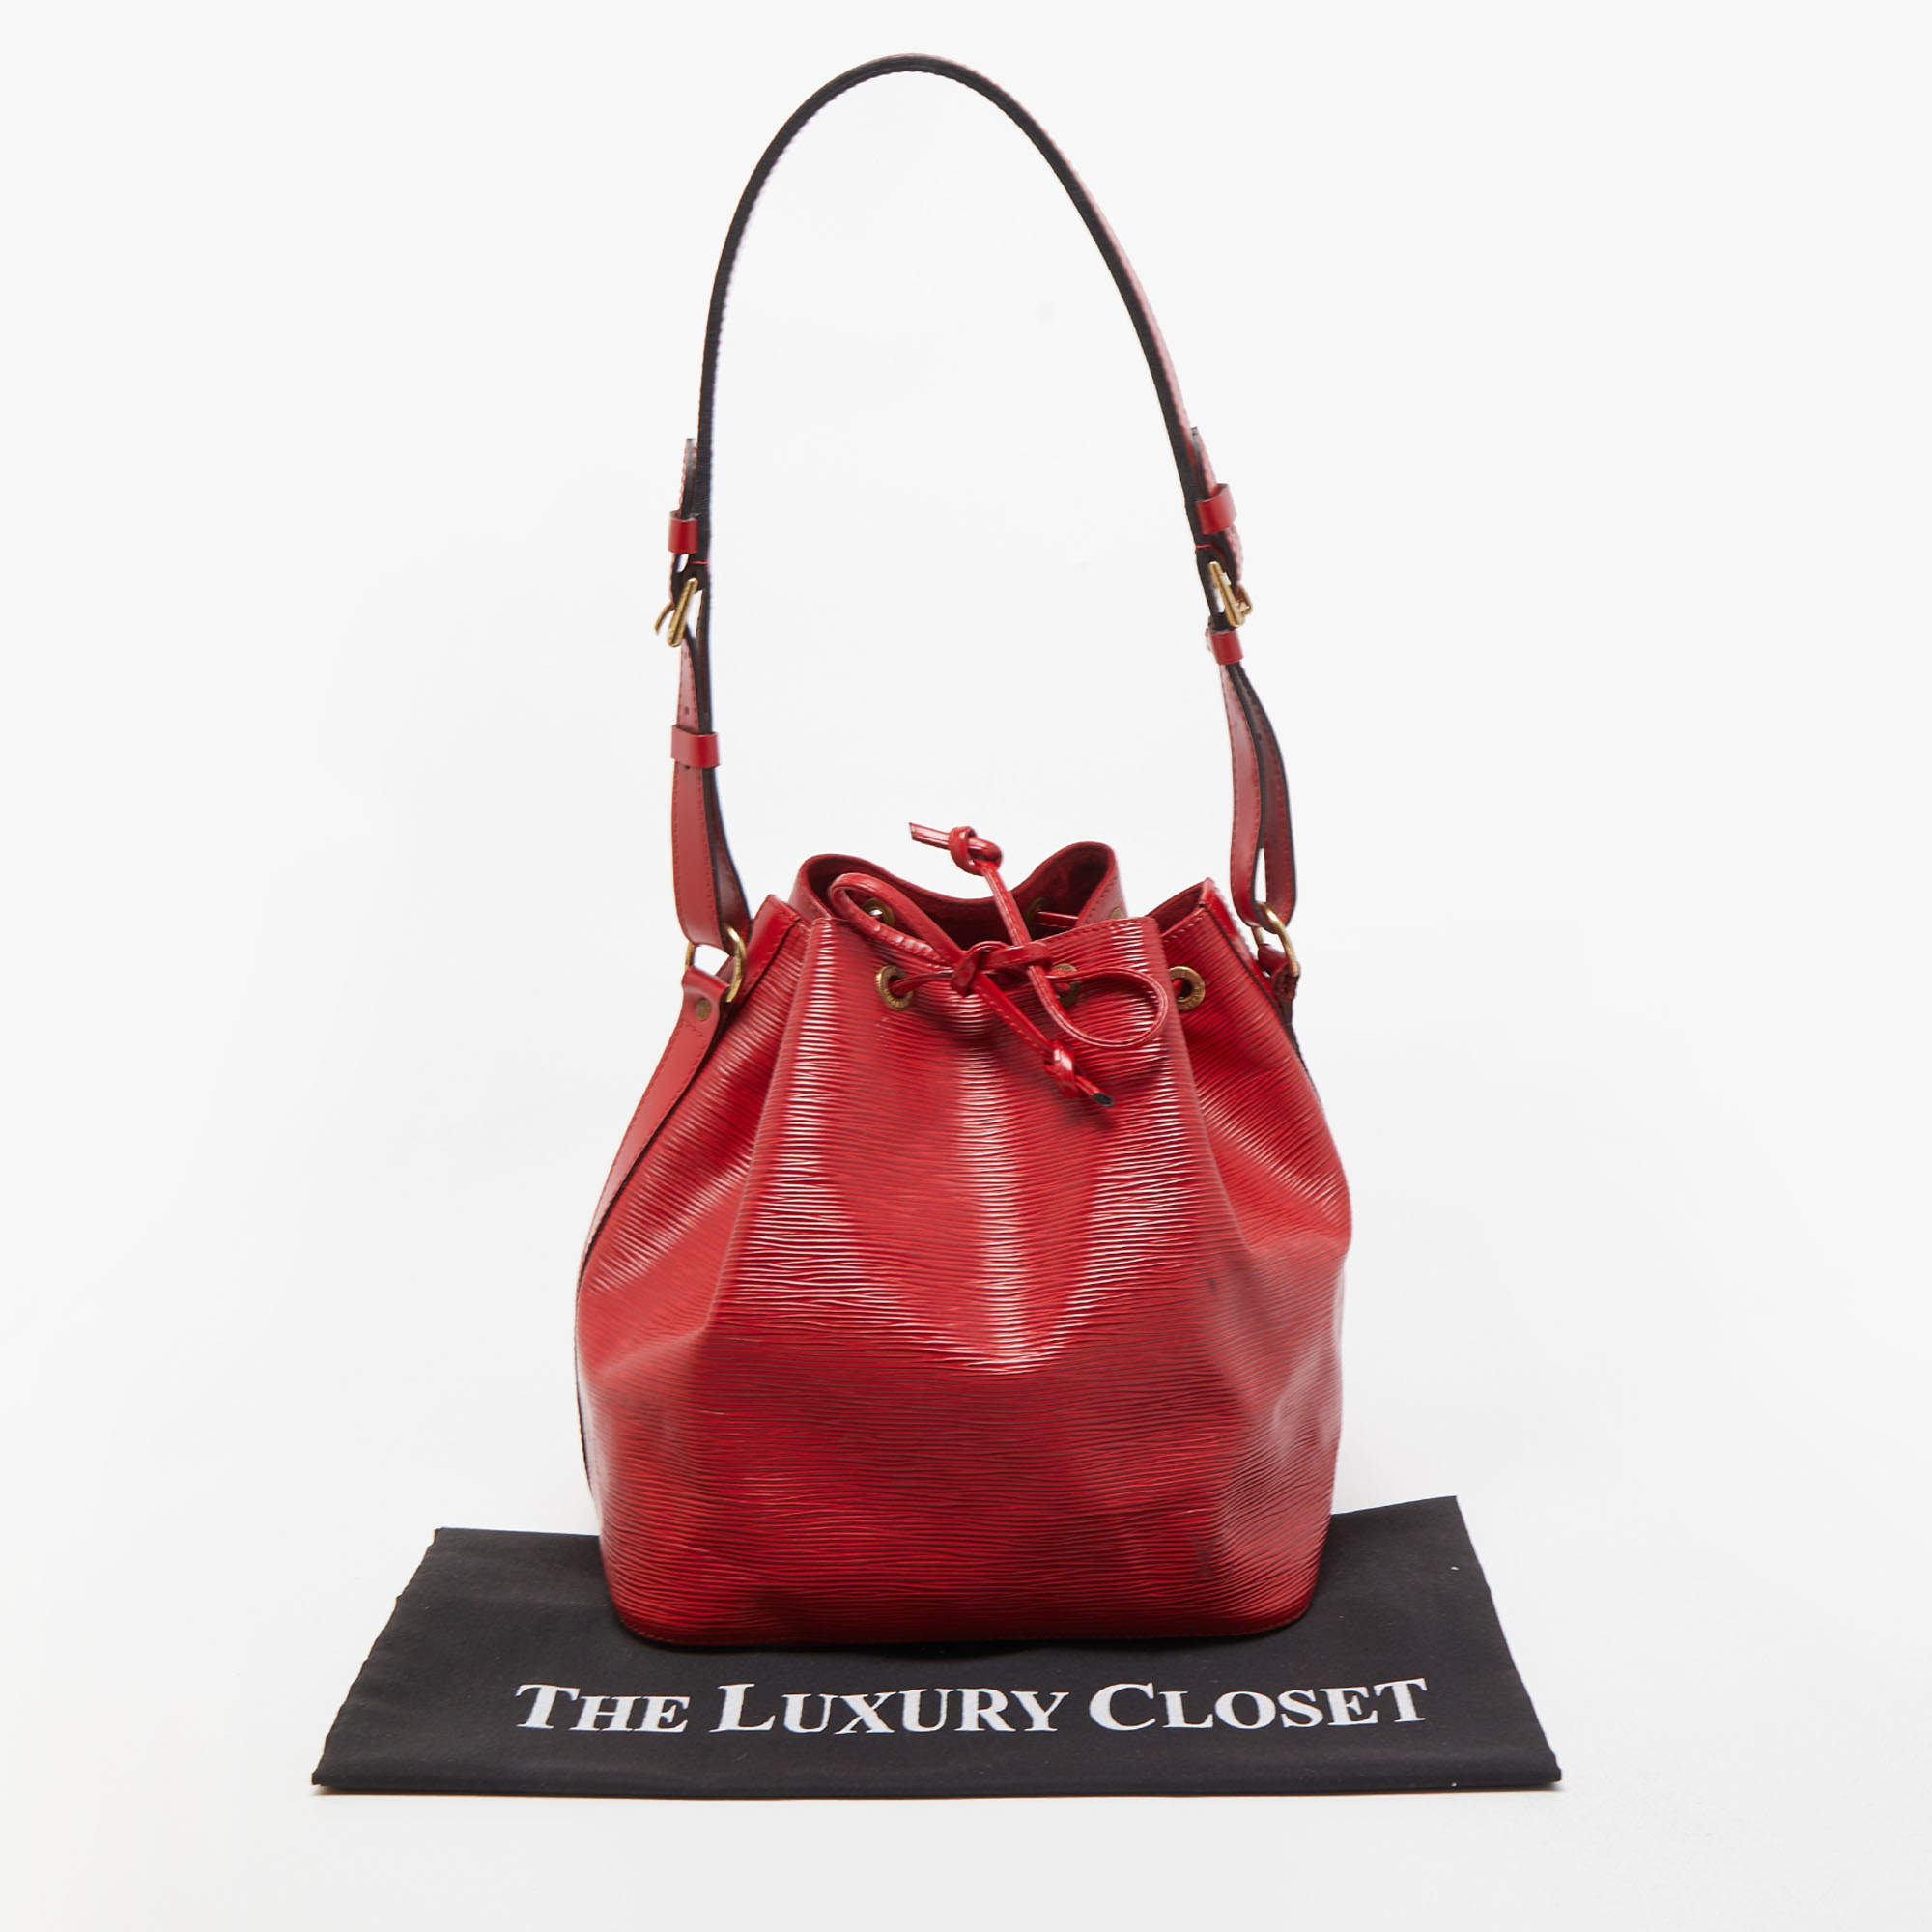 Louis Vuitton, Bags, Louis Vuitton Noe Bag